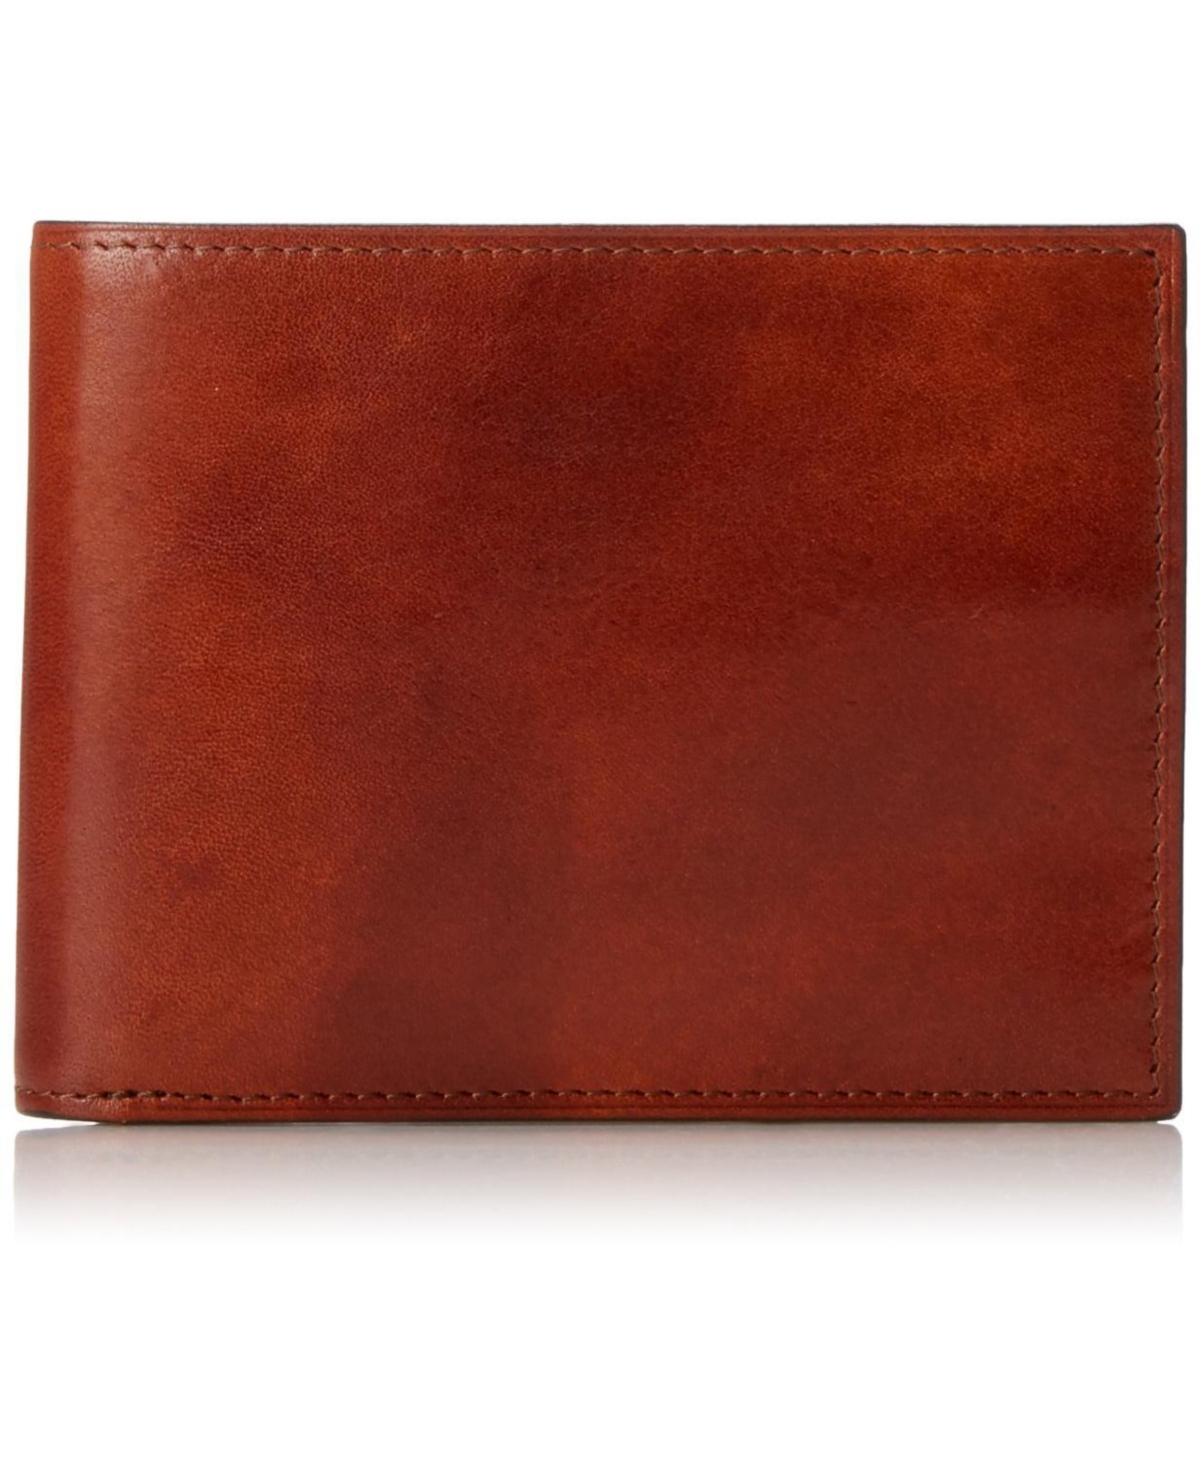 Men's 8 Pocket Wallet in Old Leather - Rfid - Amber